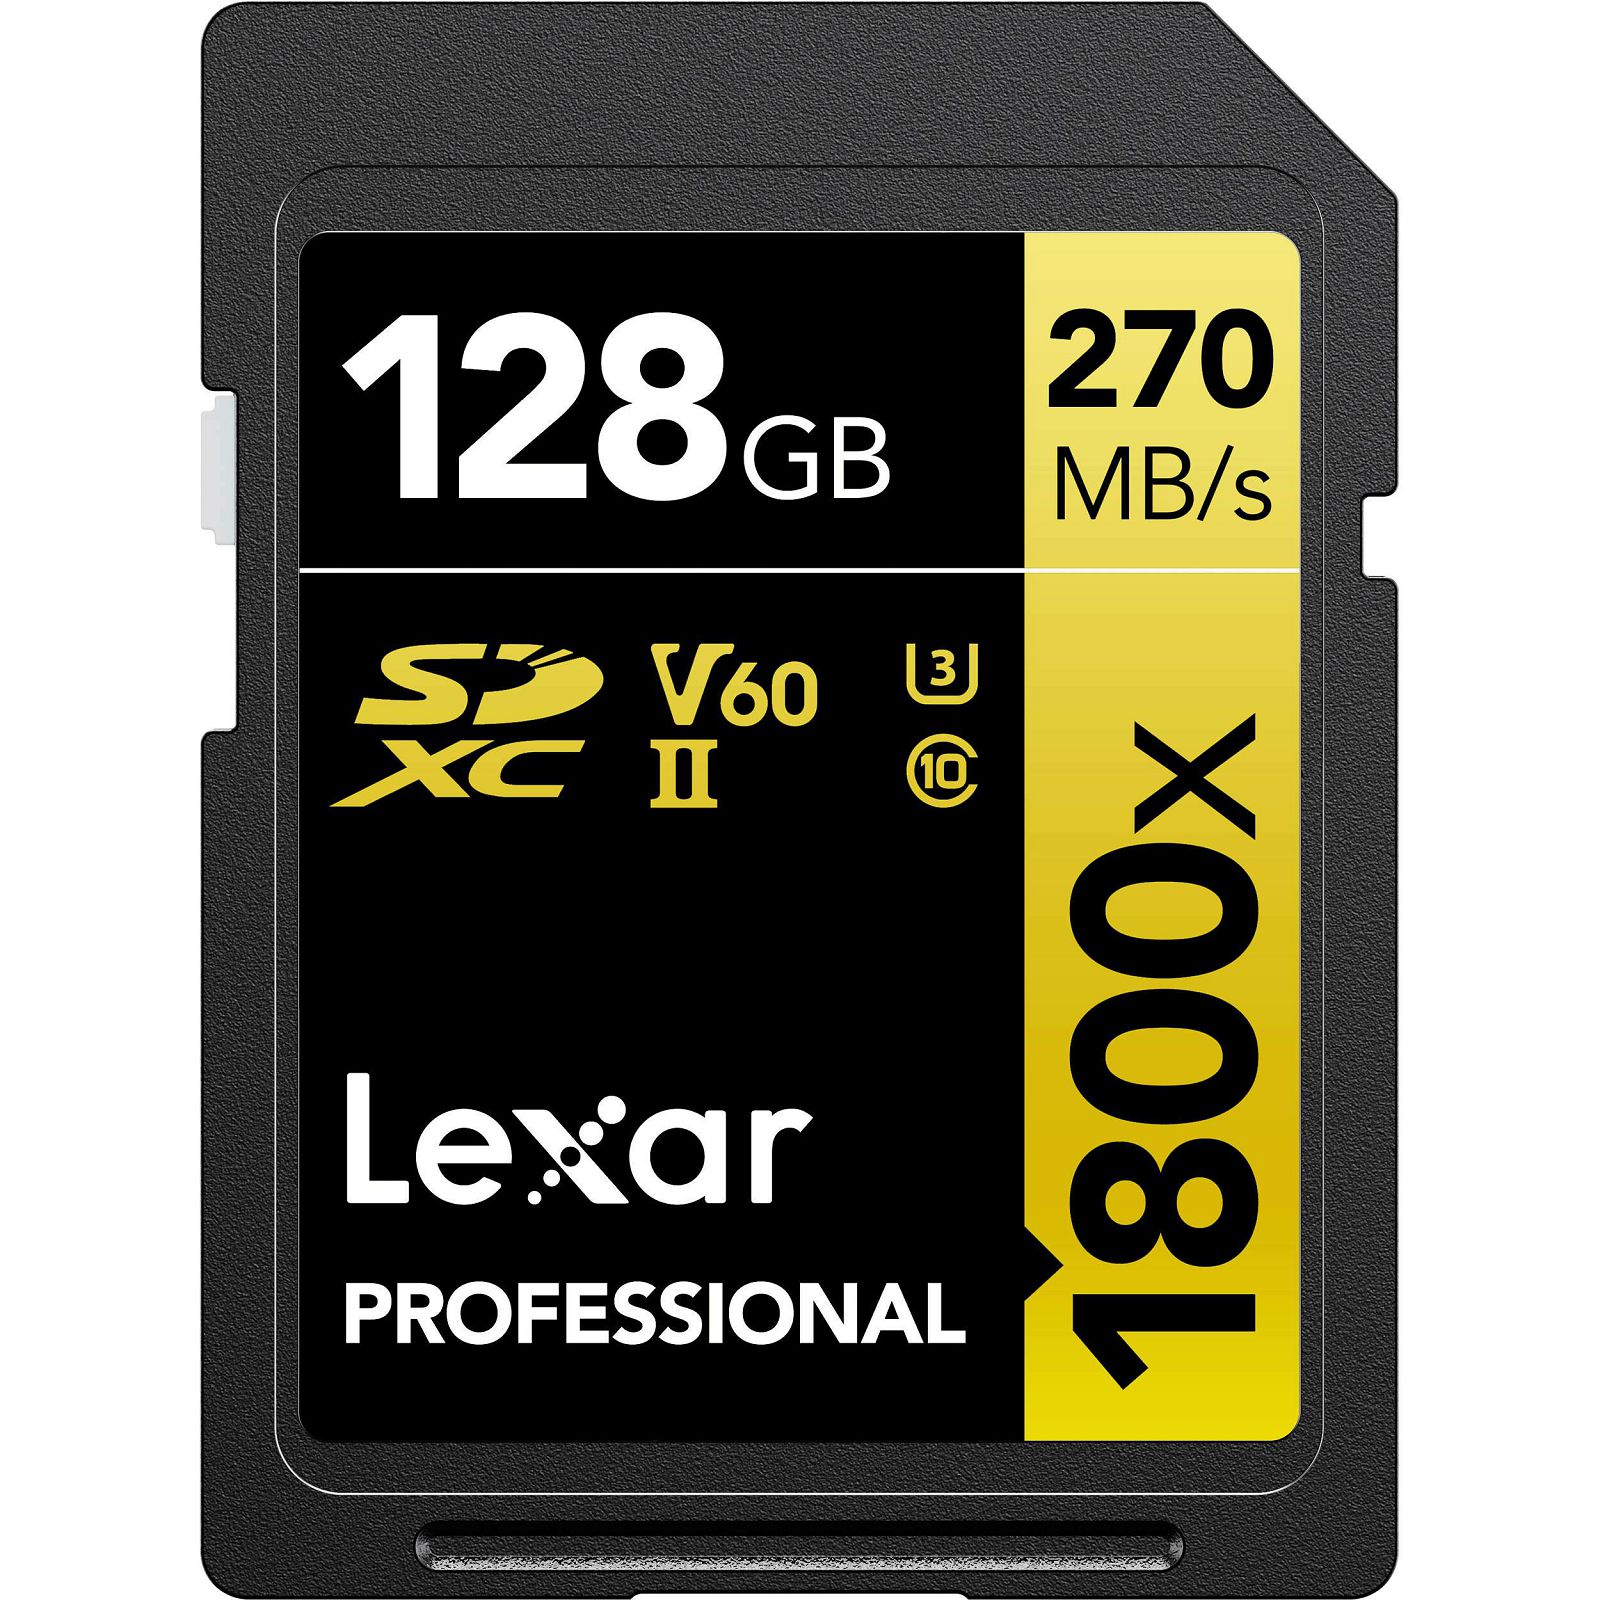 Lexar SDXC 128GB 1800x 270MB/s 180MB/s UHS-II C10 V60 U3 memorijska kartica (LSD1800128G-BNNNG)